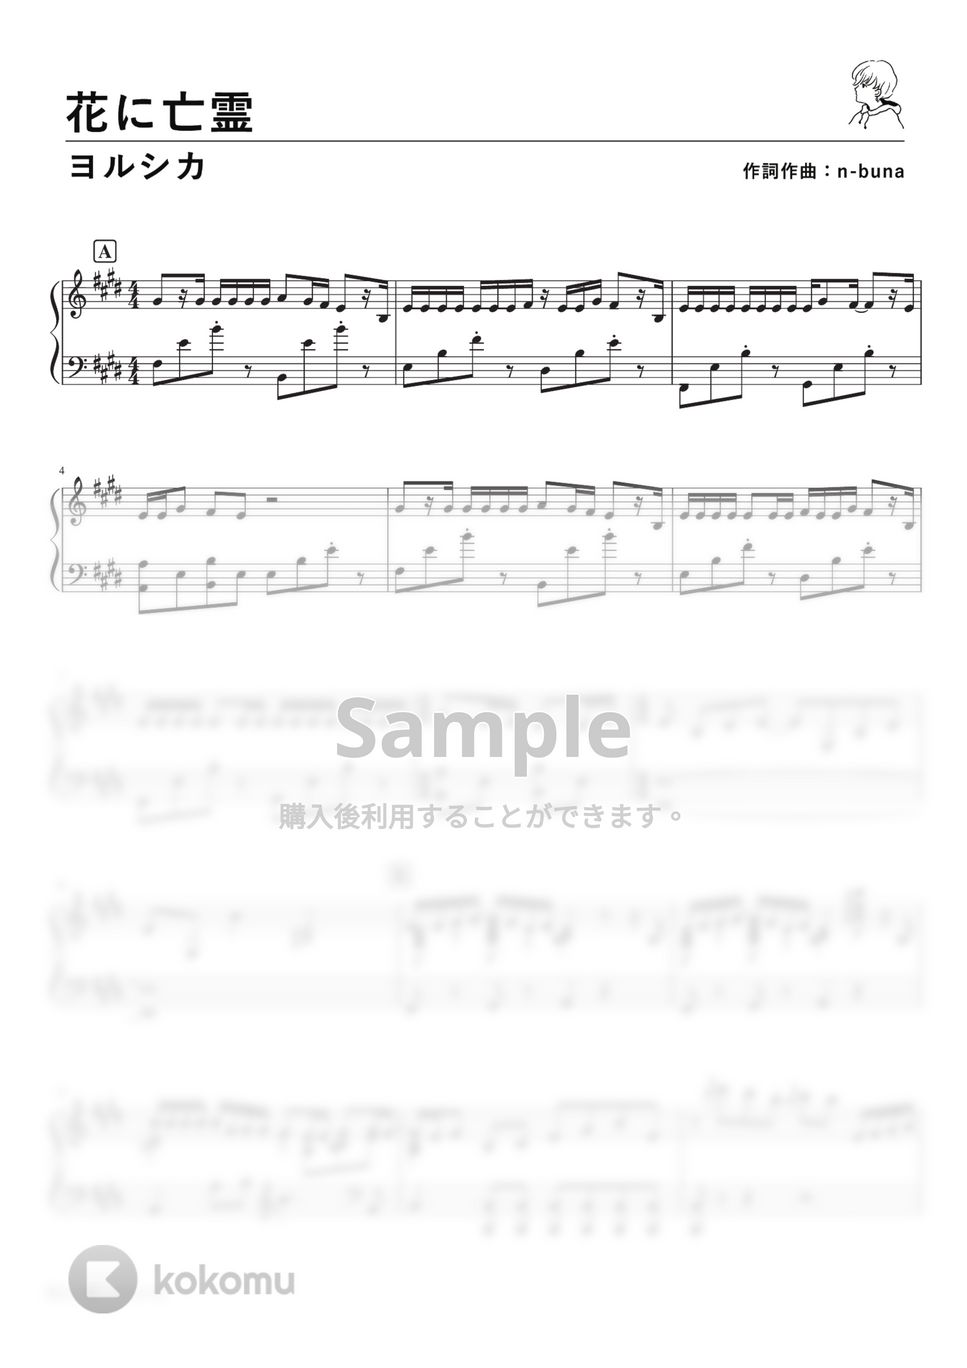 ヨルシカ - 花に亡霊 (Piano Solo) by 深根 / Fukane